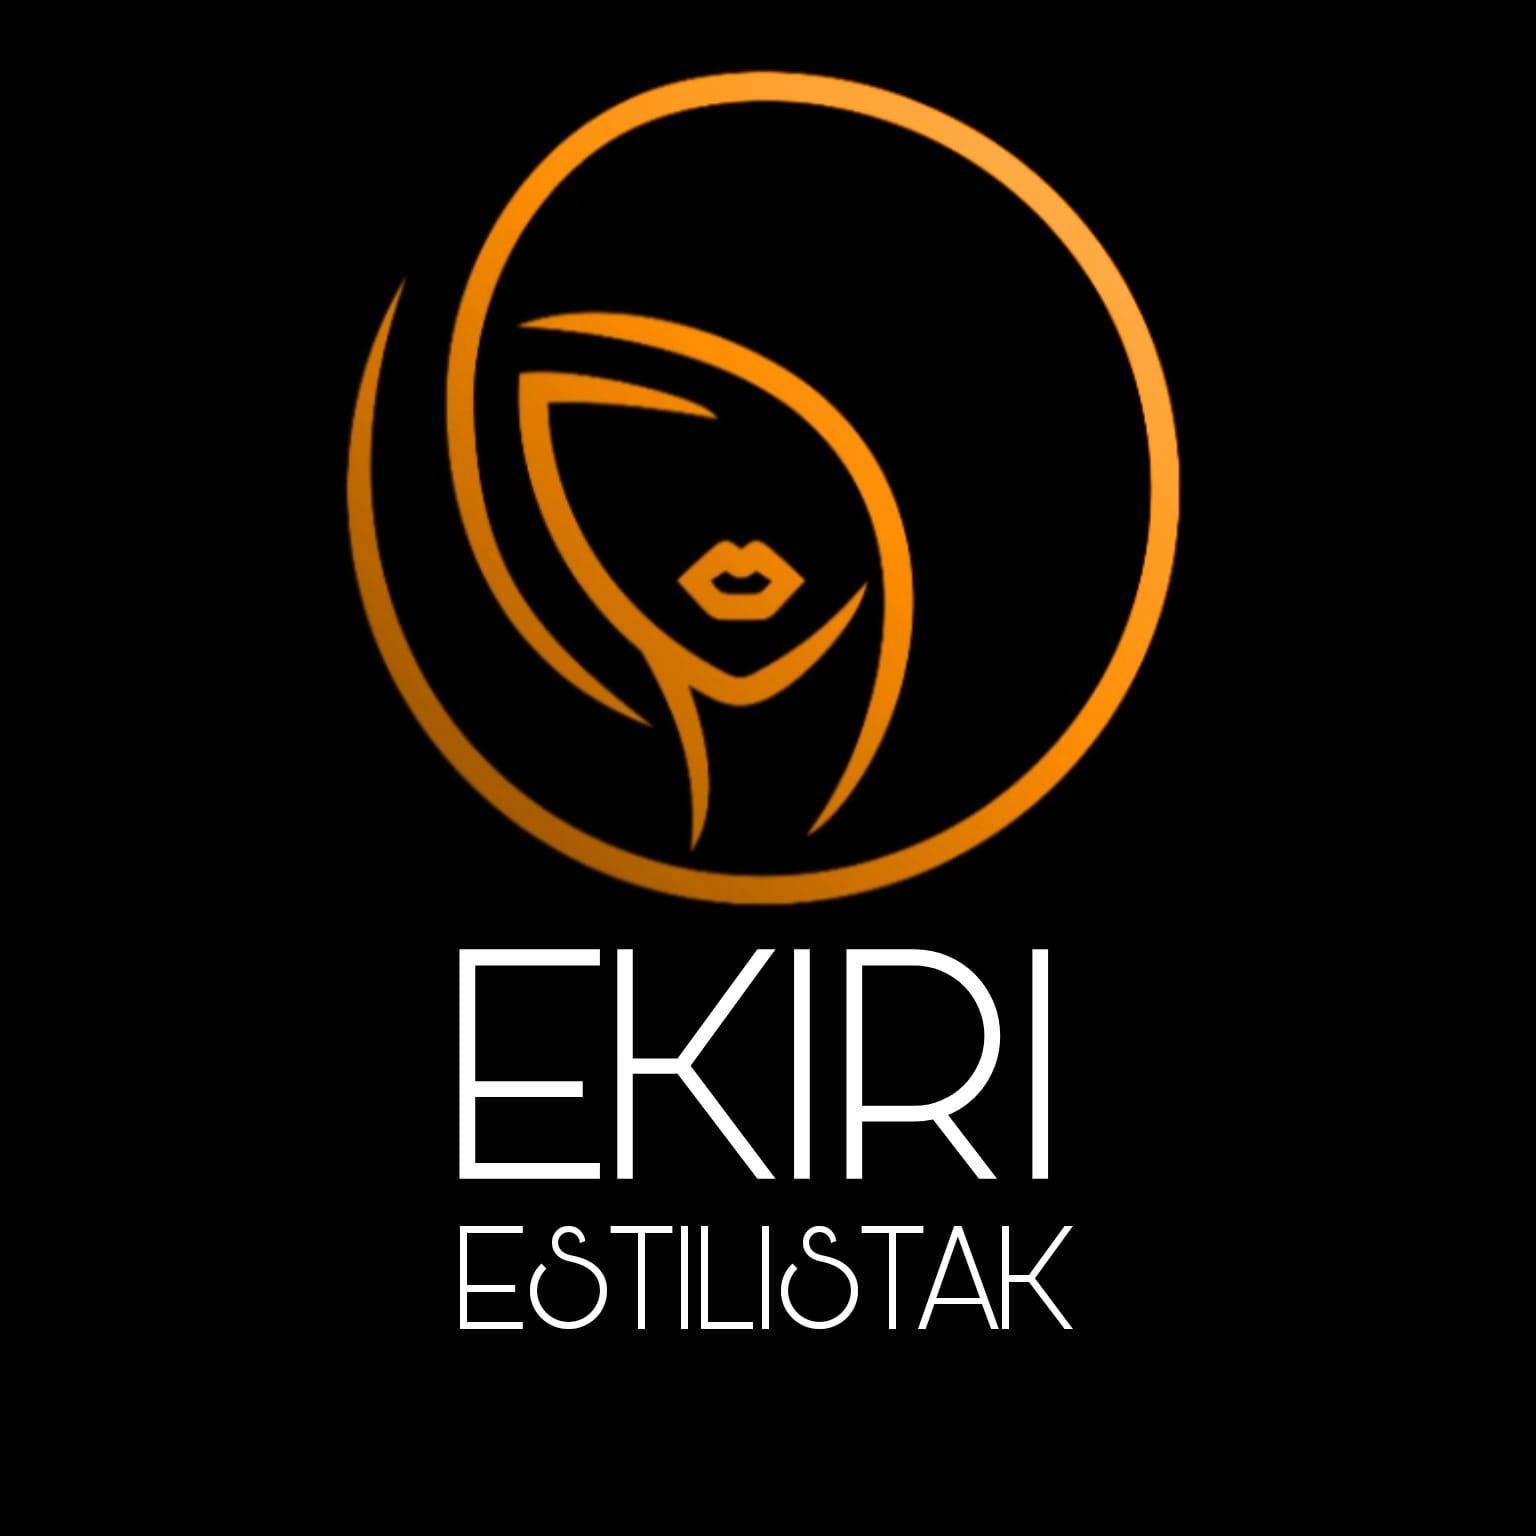 Ekiriestilistak, Astigarragako bidea42, Centro comercial mamut, 20180, Oiartzun